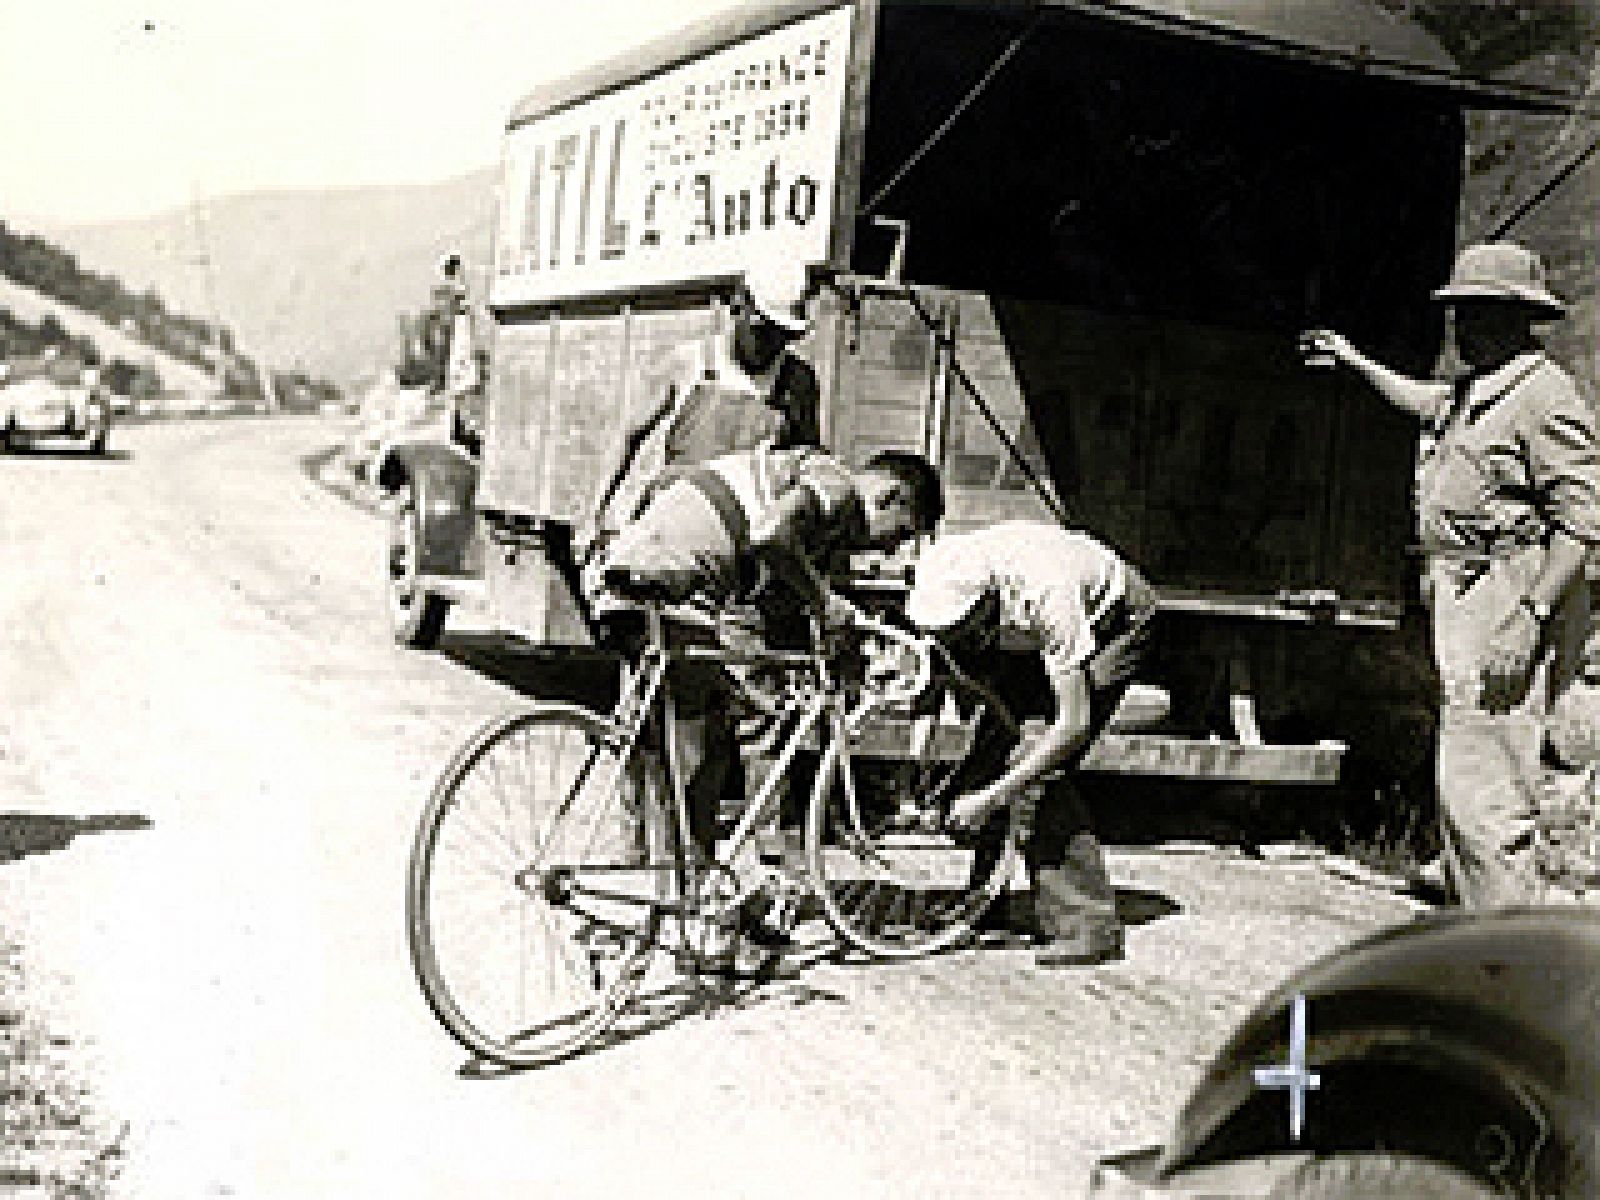 Durante el Tour de Francia de 1934, en el corazón de los Pirineos, se subía el puerto d'Aspet. René Vietto que iba escapado recibió una orden de su director técnico, tenía que pararse y ceder su rueda delantera al líder del equipo francés Magne porqu